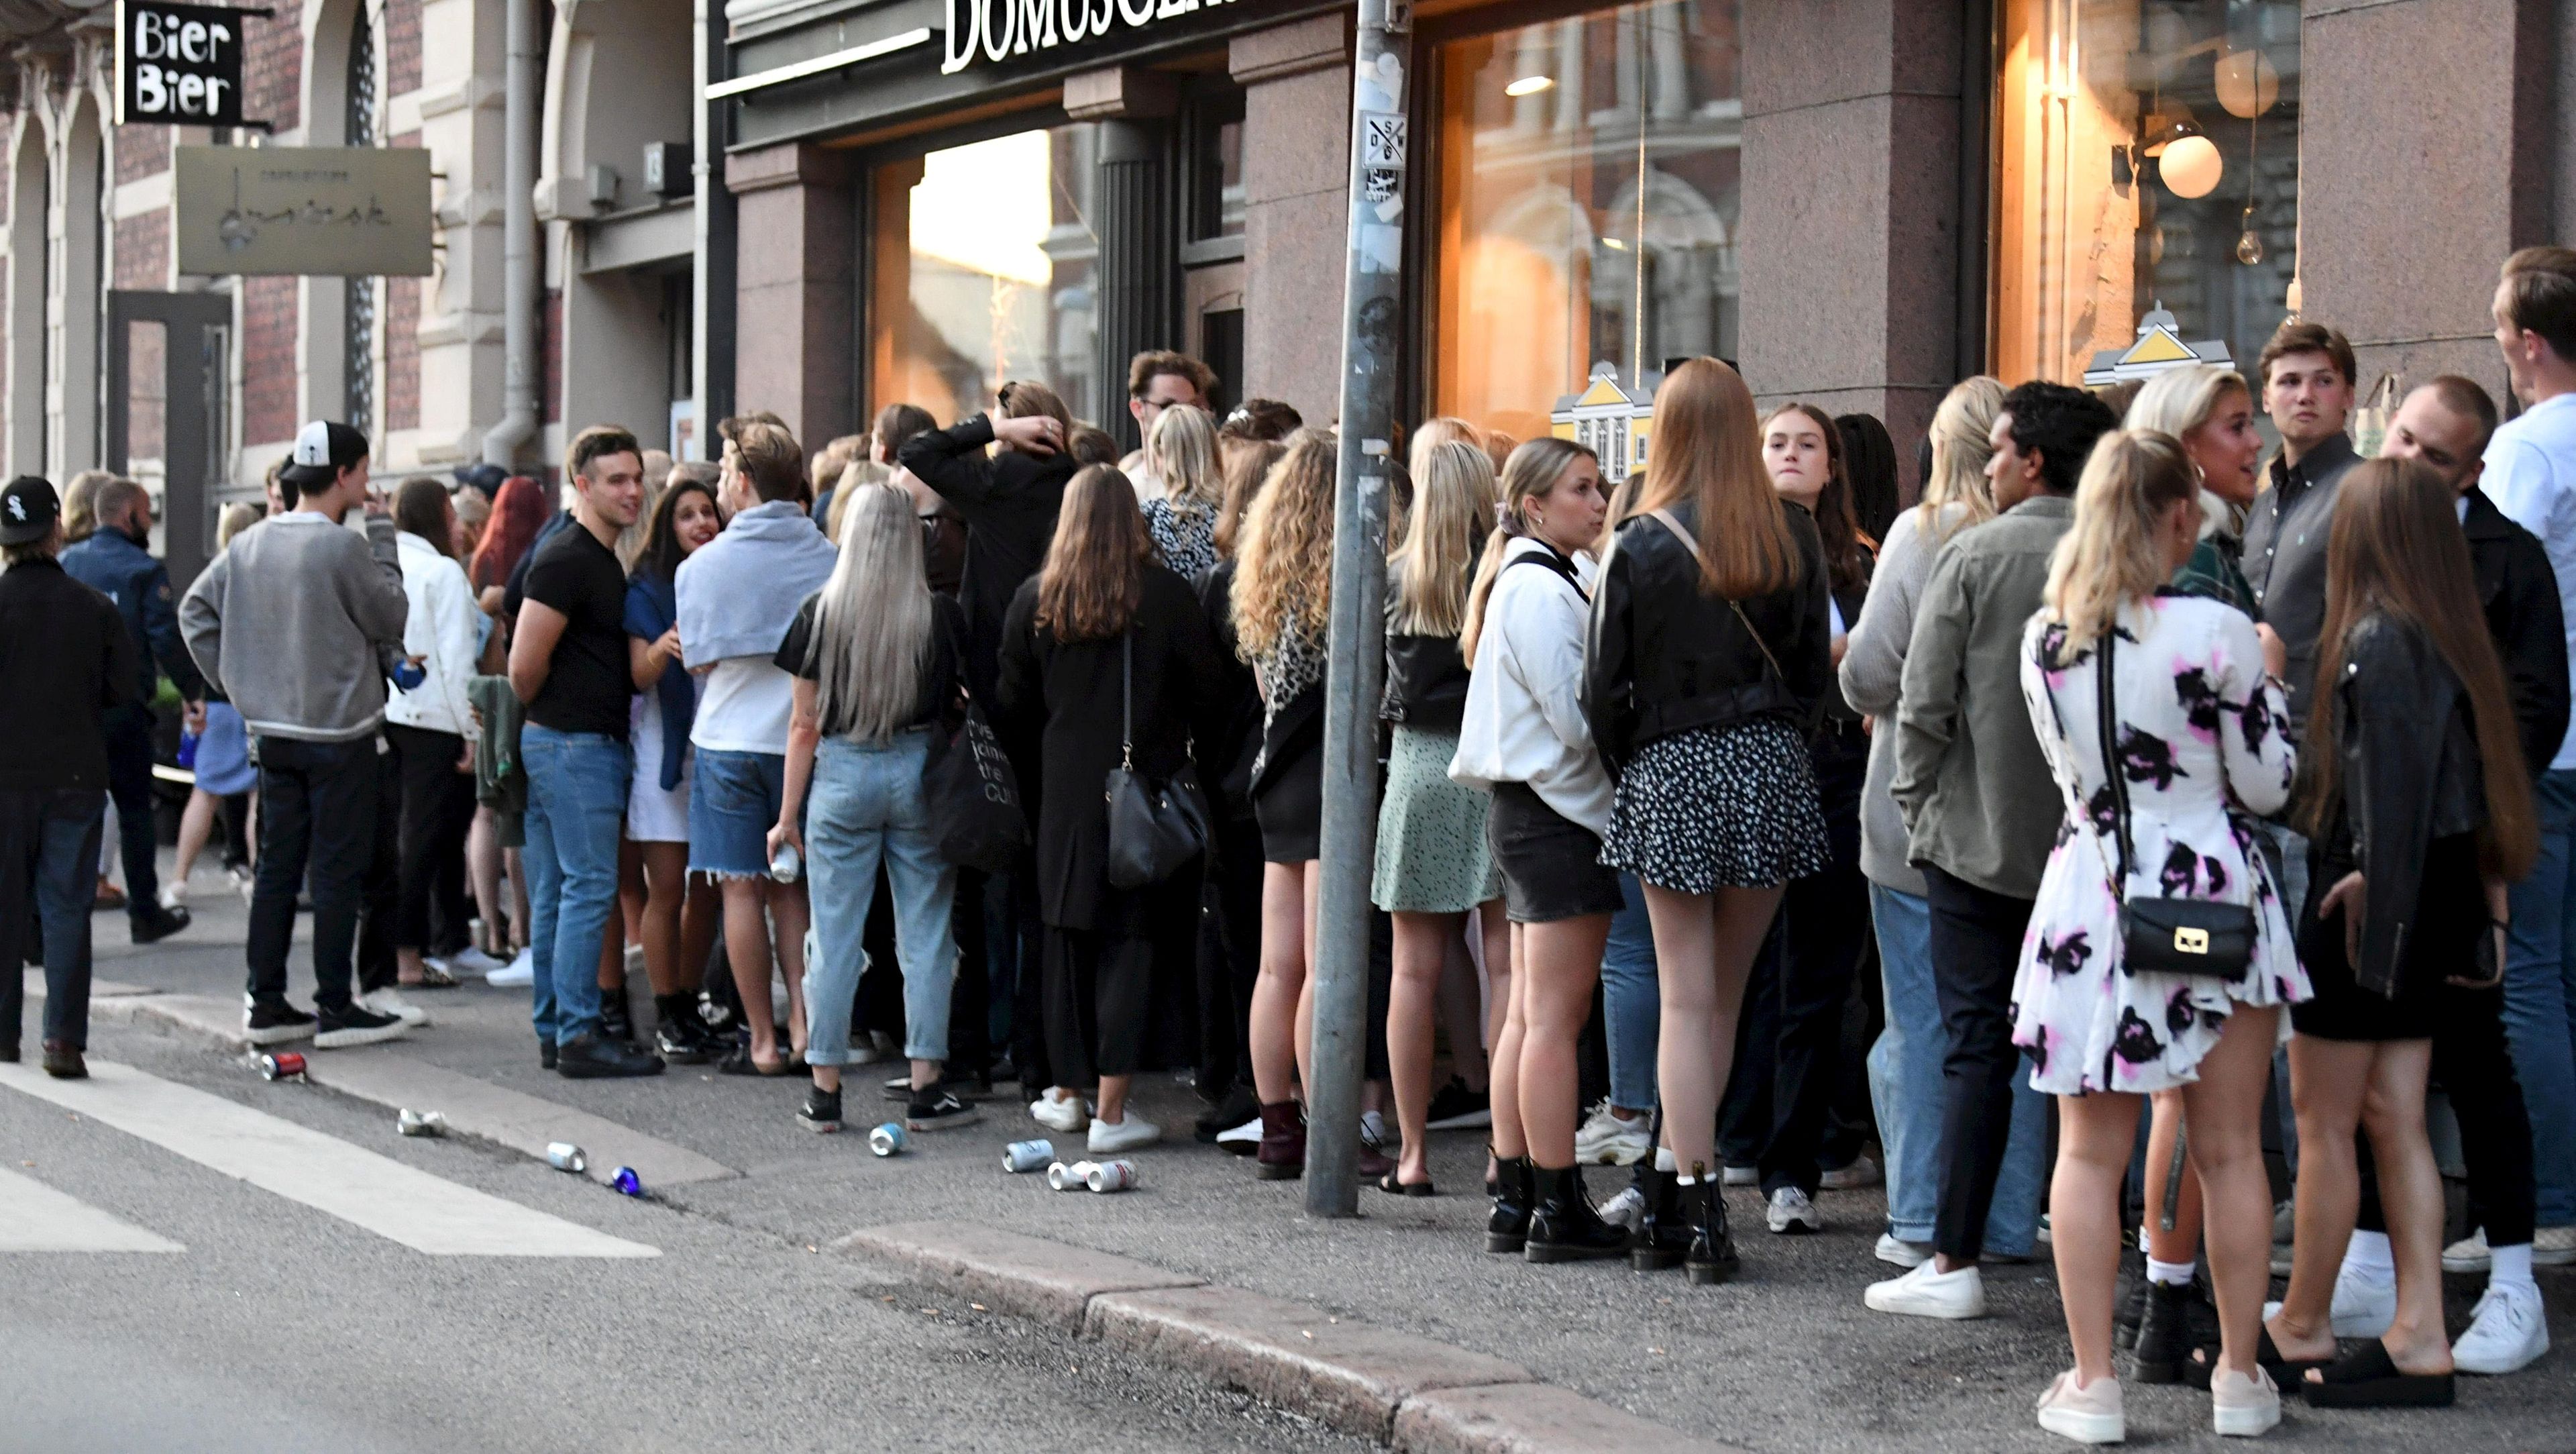 Jóvenes esperando a entrar en una discoteca en Helsinki.